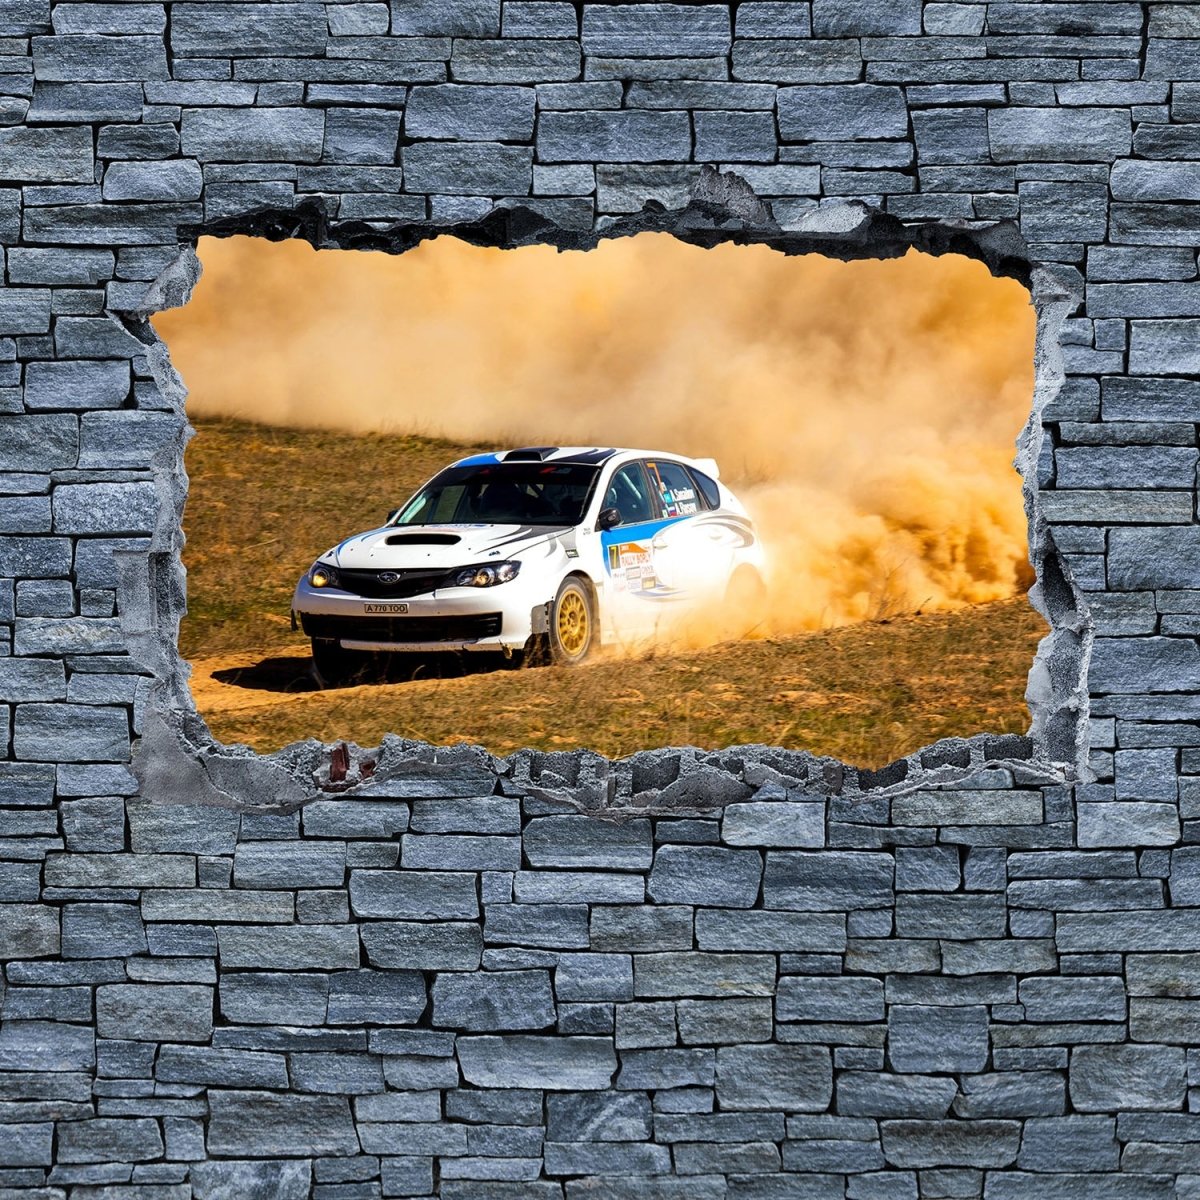 Beistelltisch 3D Rallye Auto - grobe Steinmauer M0641 entdecken - Bild 2